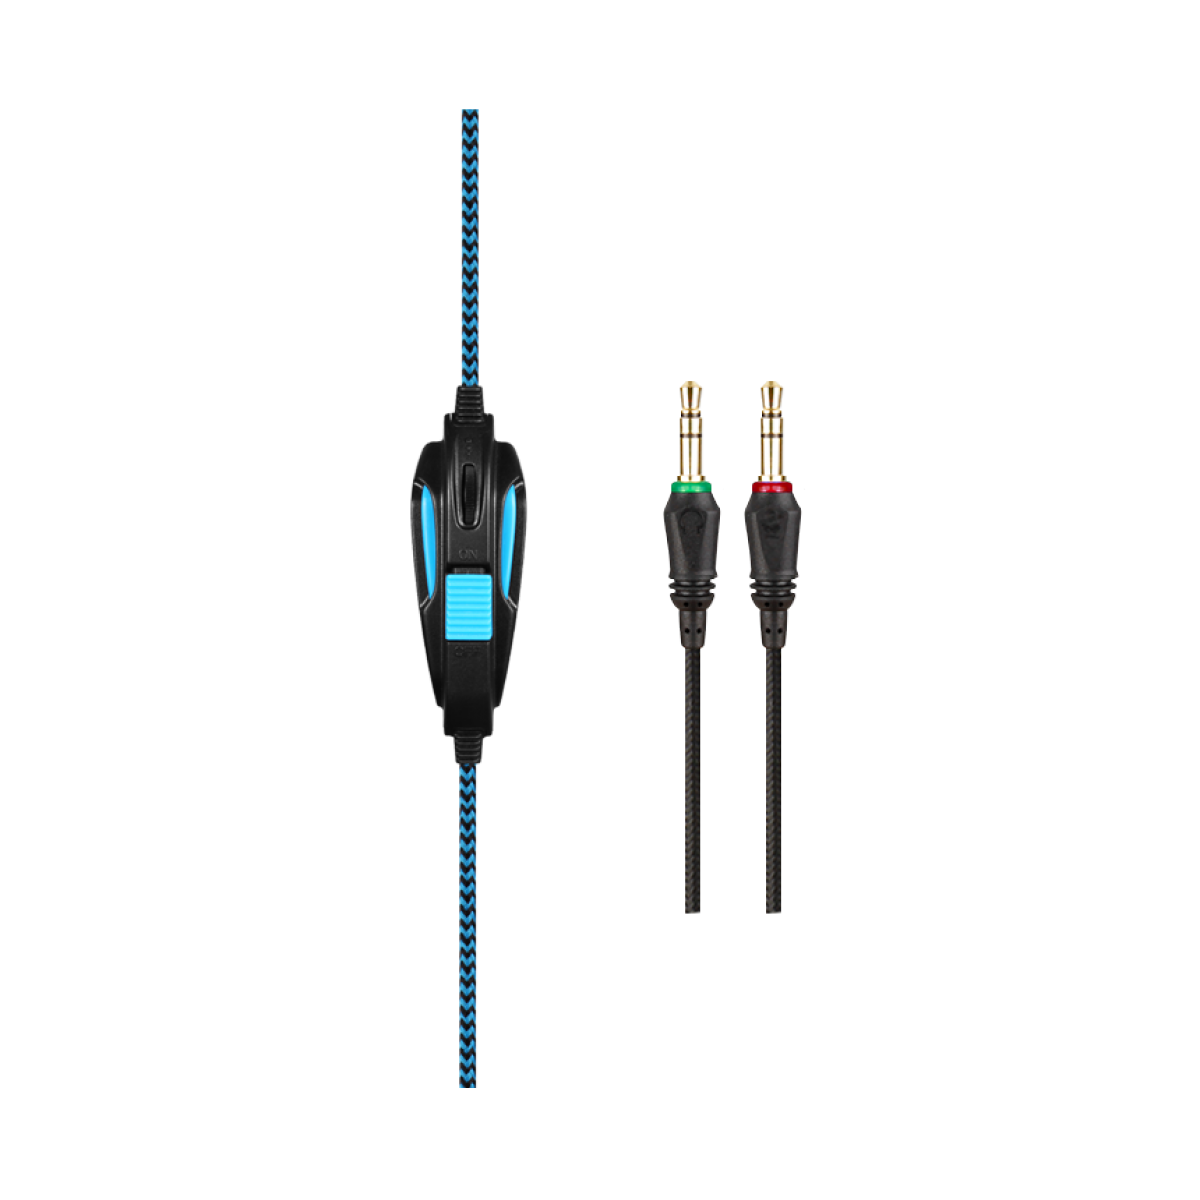 Headset Gamer Sades Sa-708 Gpower, Stereo, Black/Blue, SA-708